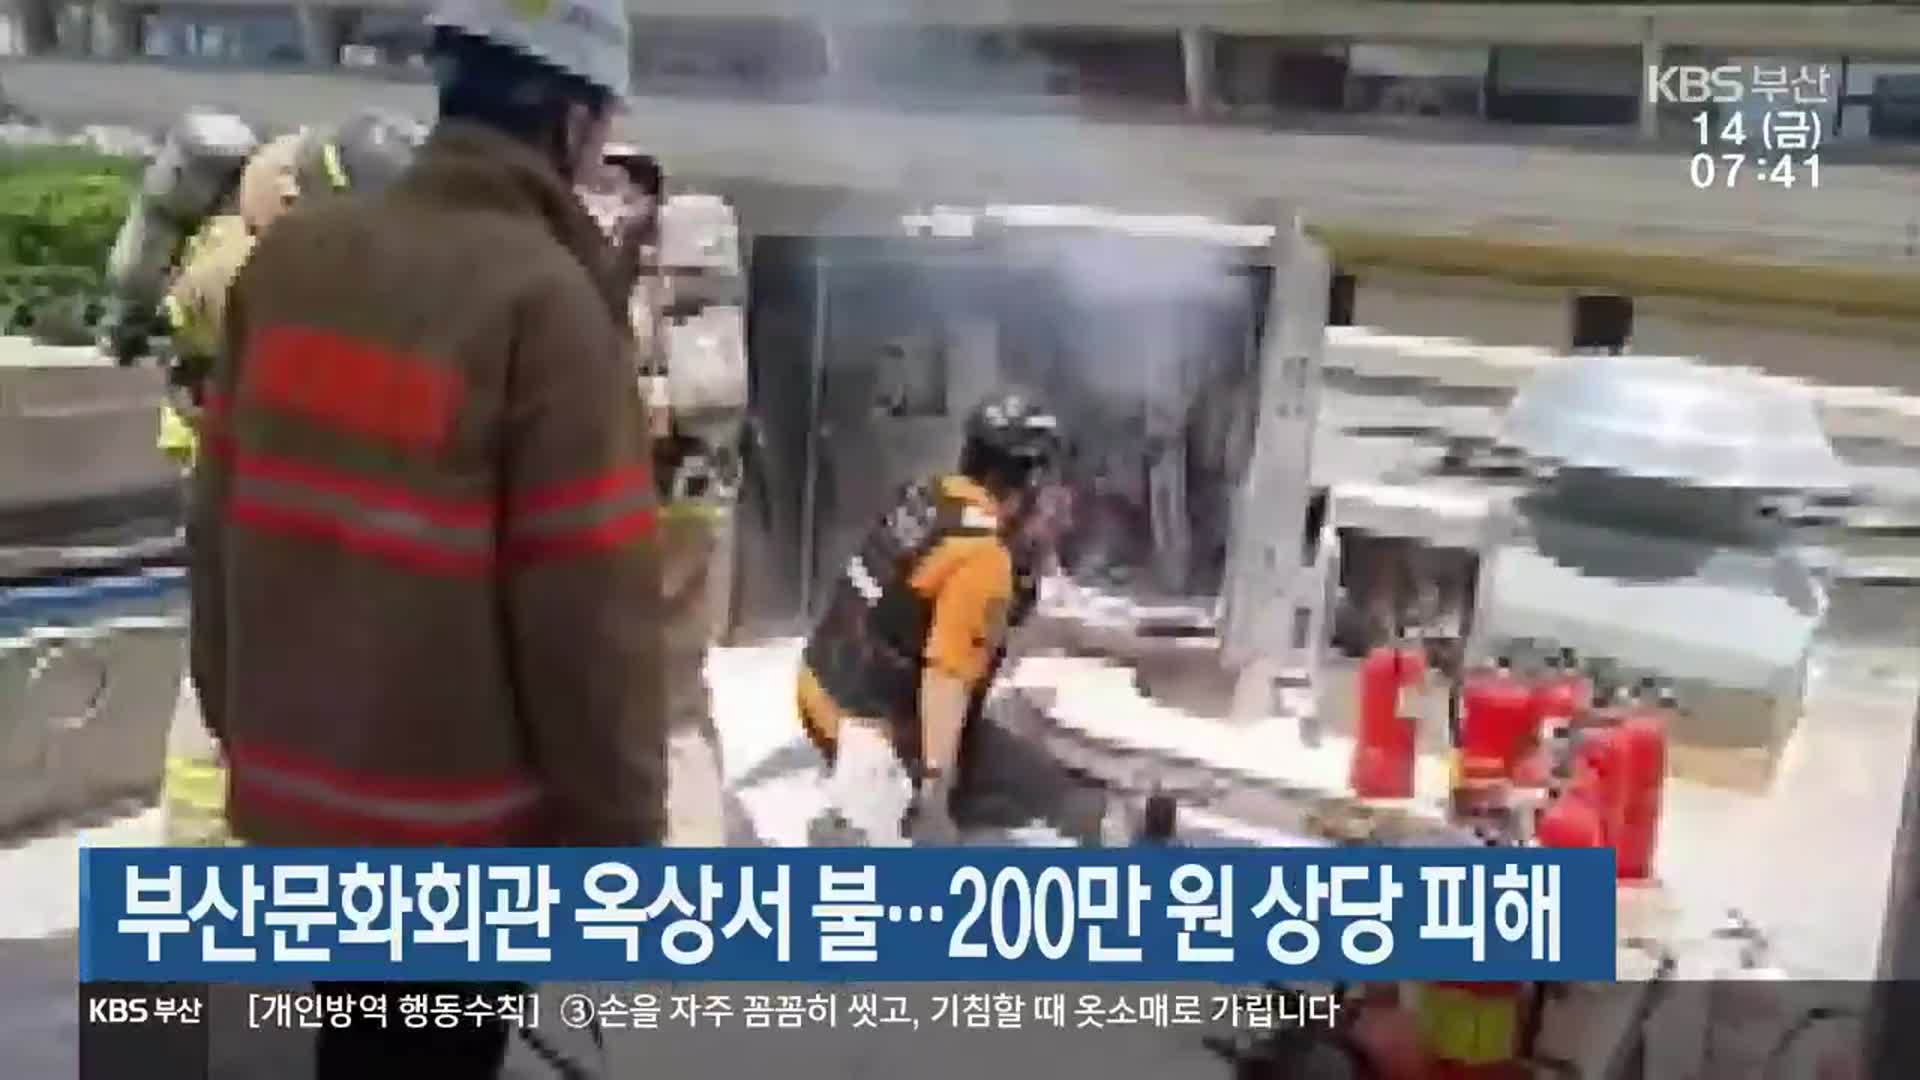 부산문화회관 옥상서 불…200만 원 상당 피해